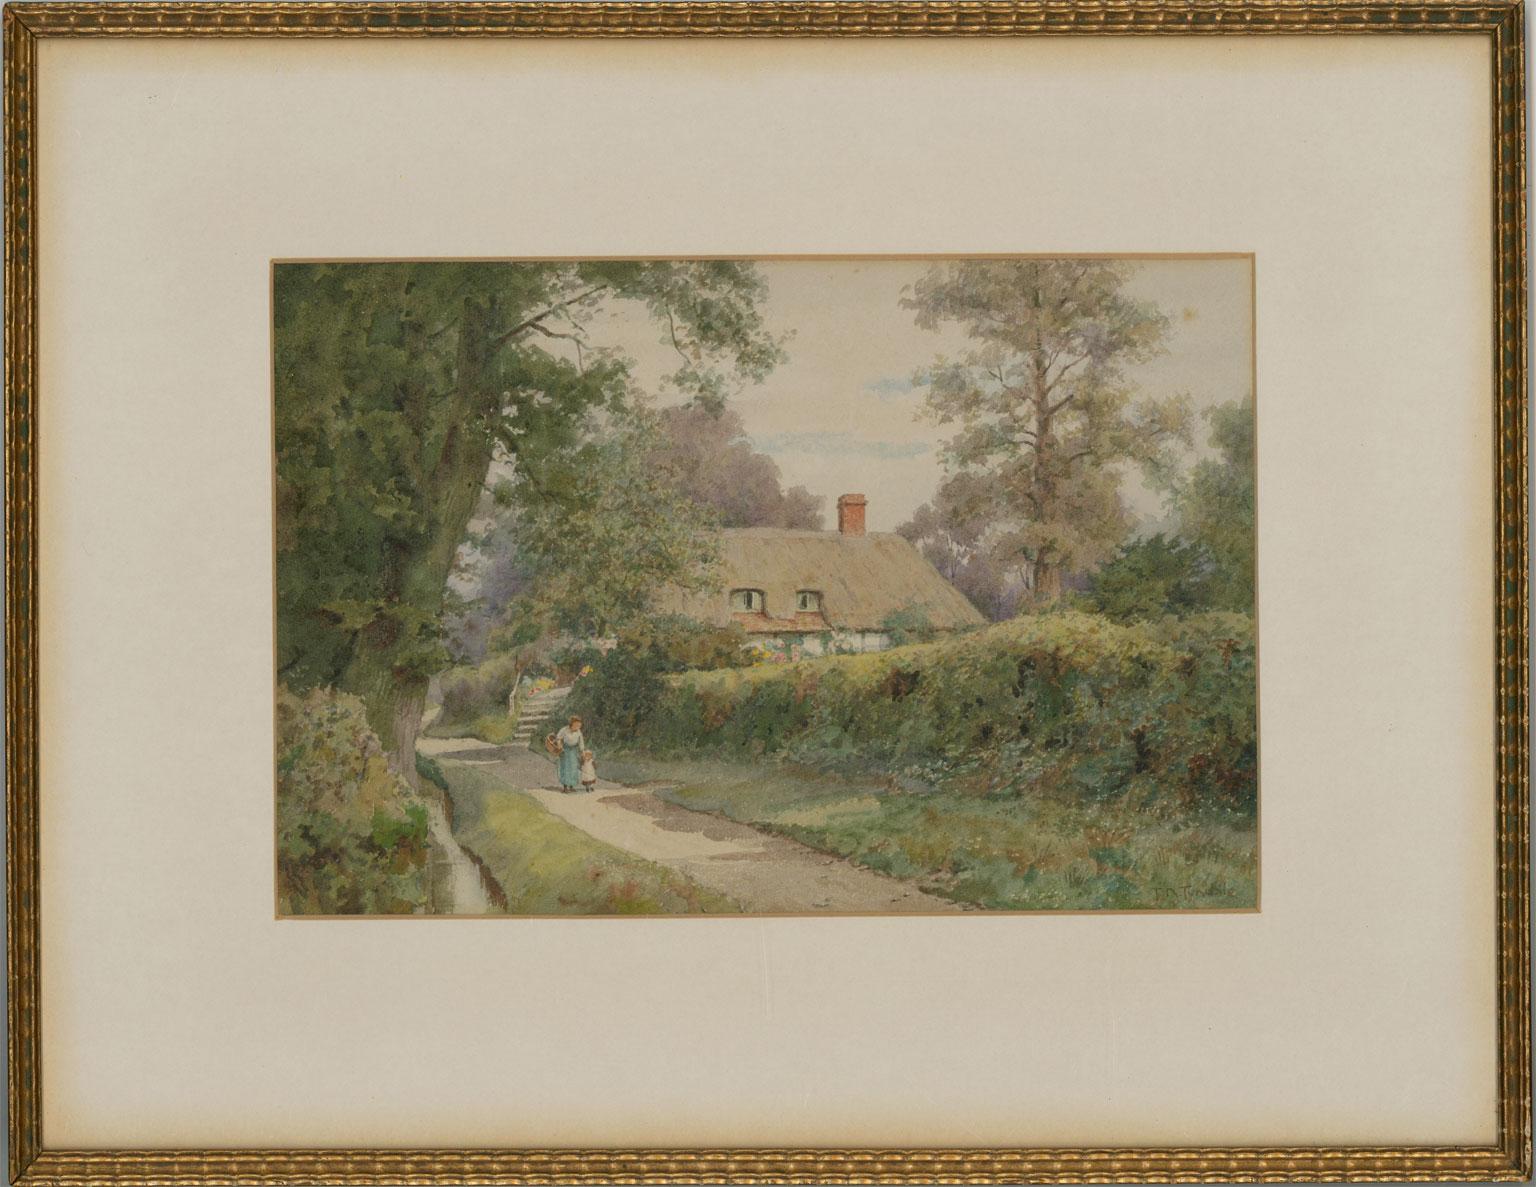 Unknown Landscape Art - Thomas Nicholson Tyndale (1860-1930) - 20th Century Watercolour, Clifden Hampden